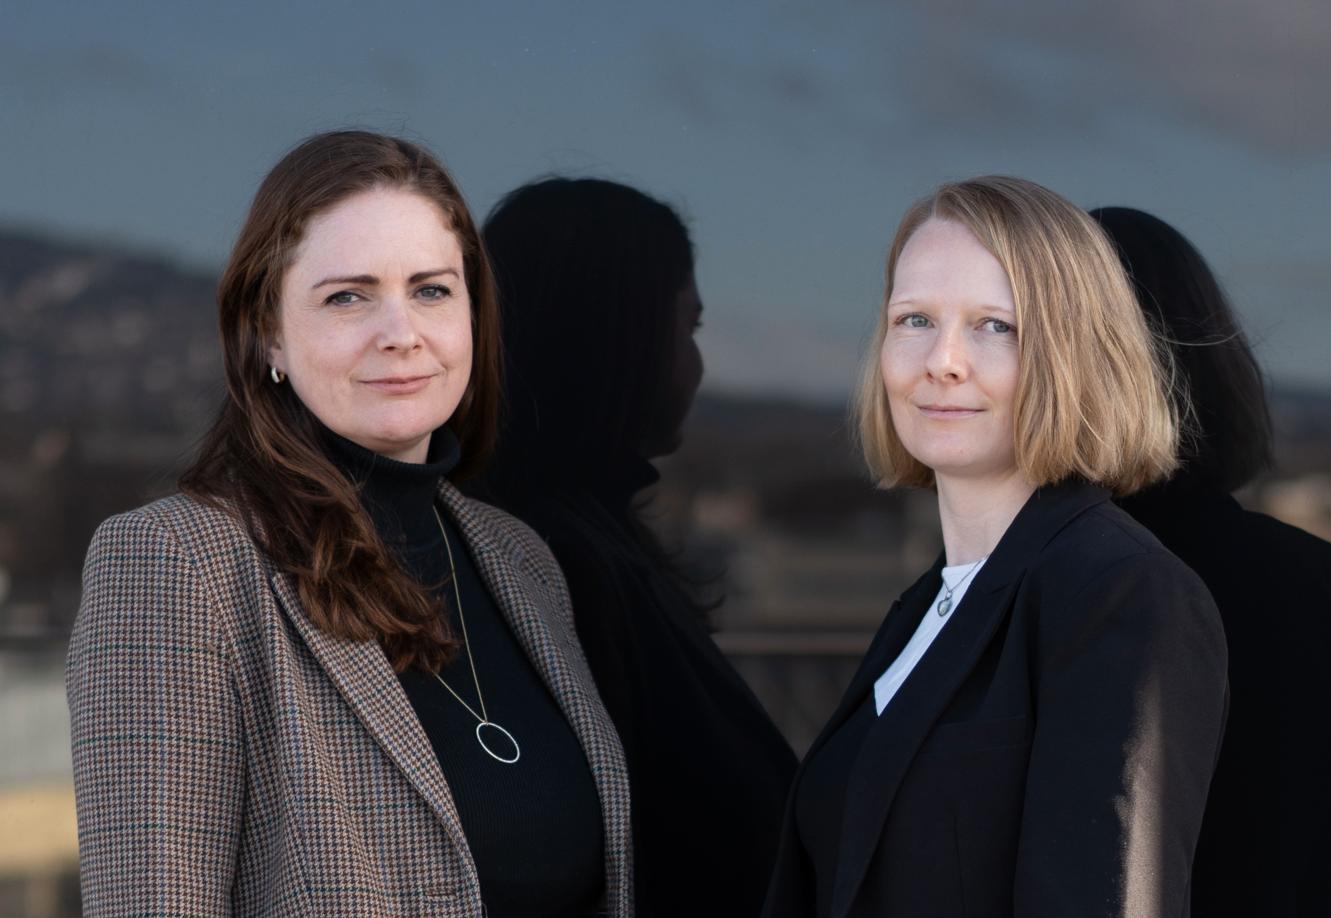 Juristene Tine Vigmostad, partner (t.v.) og Hanne Gundersrud, senioradvokat hos advokatfirmaet Wikborg Rein er sanksjonseksperter.